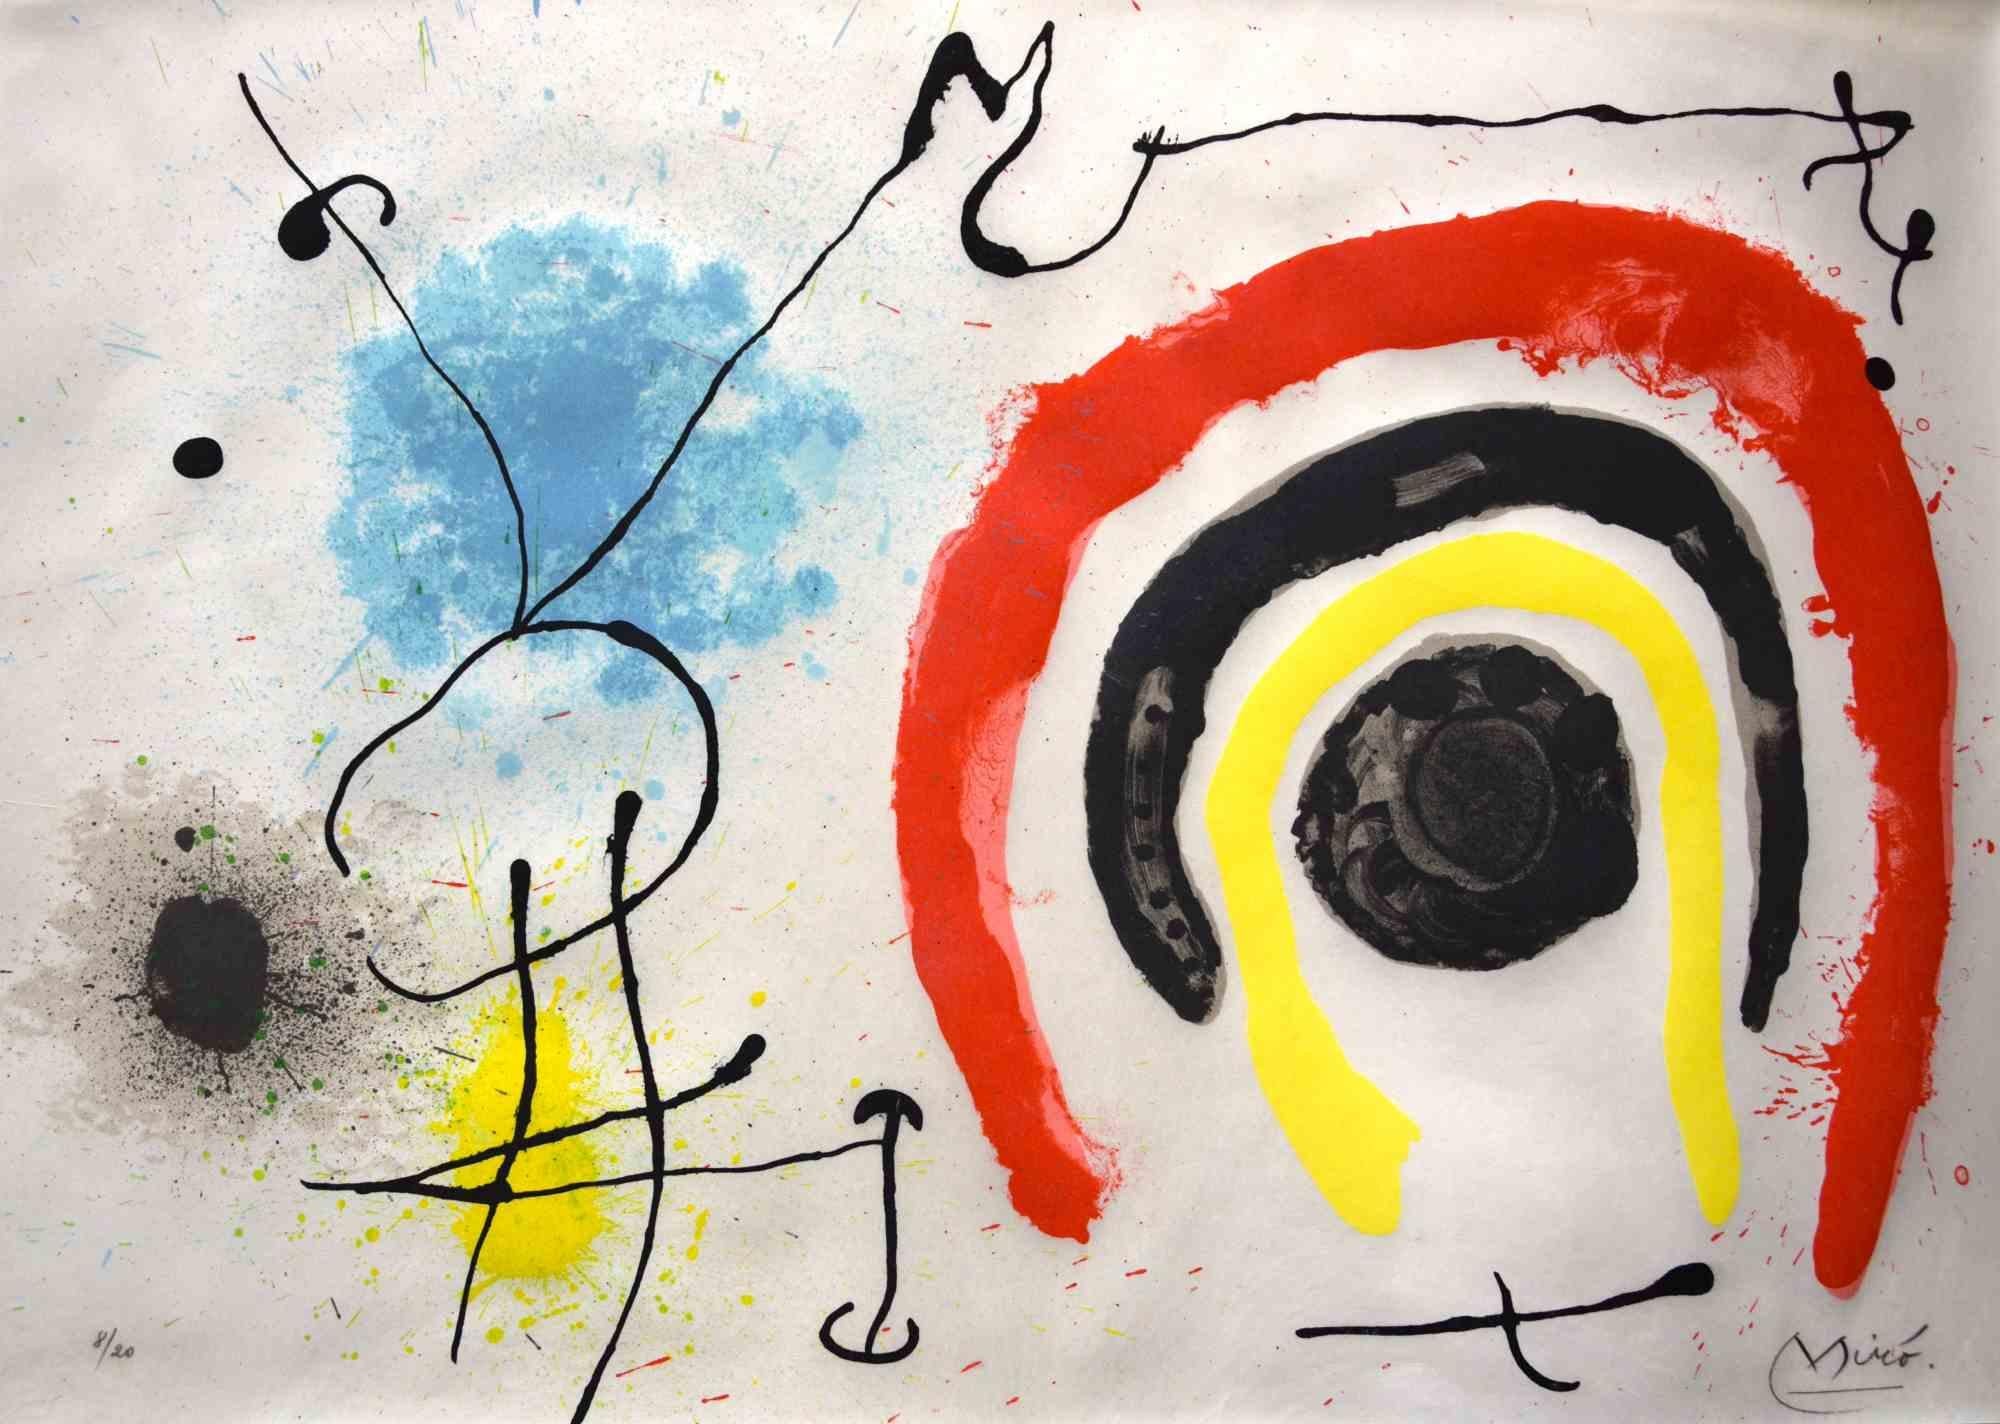 Le Lézard aux Plumes d'Or ist eine schöne und seltene Farblithografie auf Pergament, die 1967 von dem spanischen surrealistischen Künstler Joan Miró geschaffen wurde.  (Montroing, 1893 - Mallorca, 1983).

Links unten nummeriert: 8/20.

Rechts unten